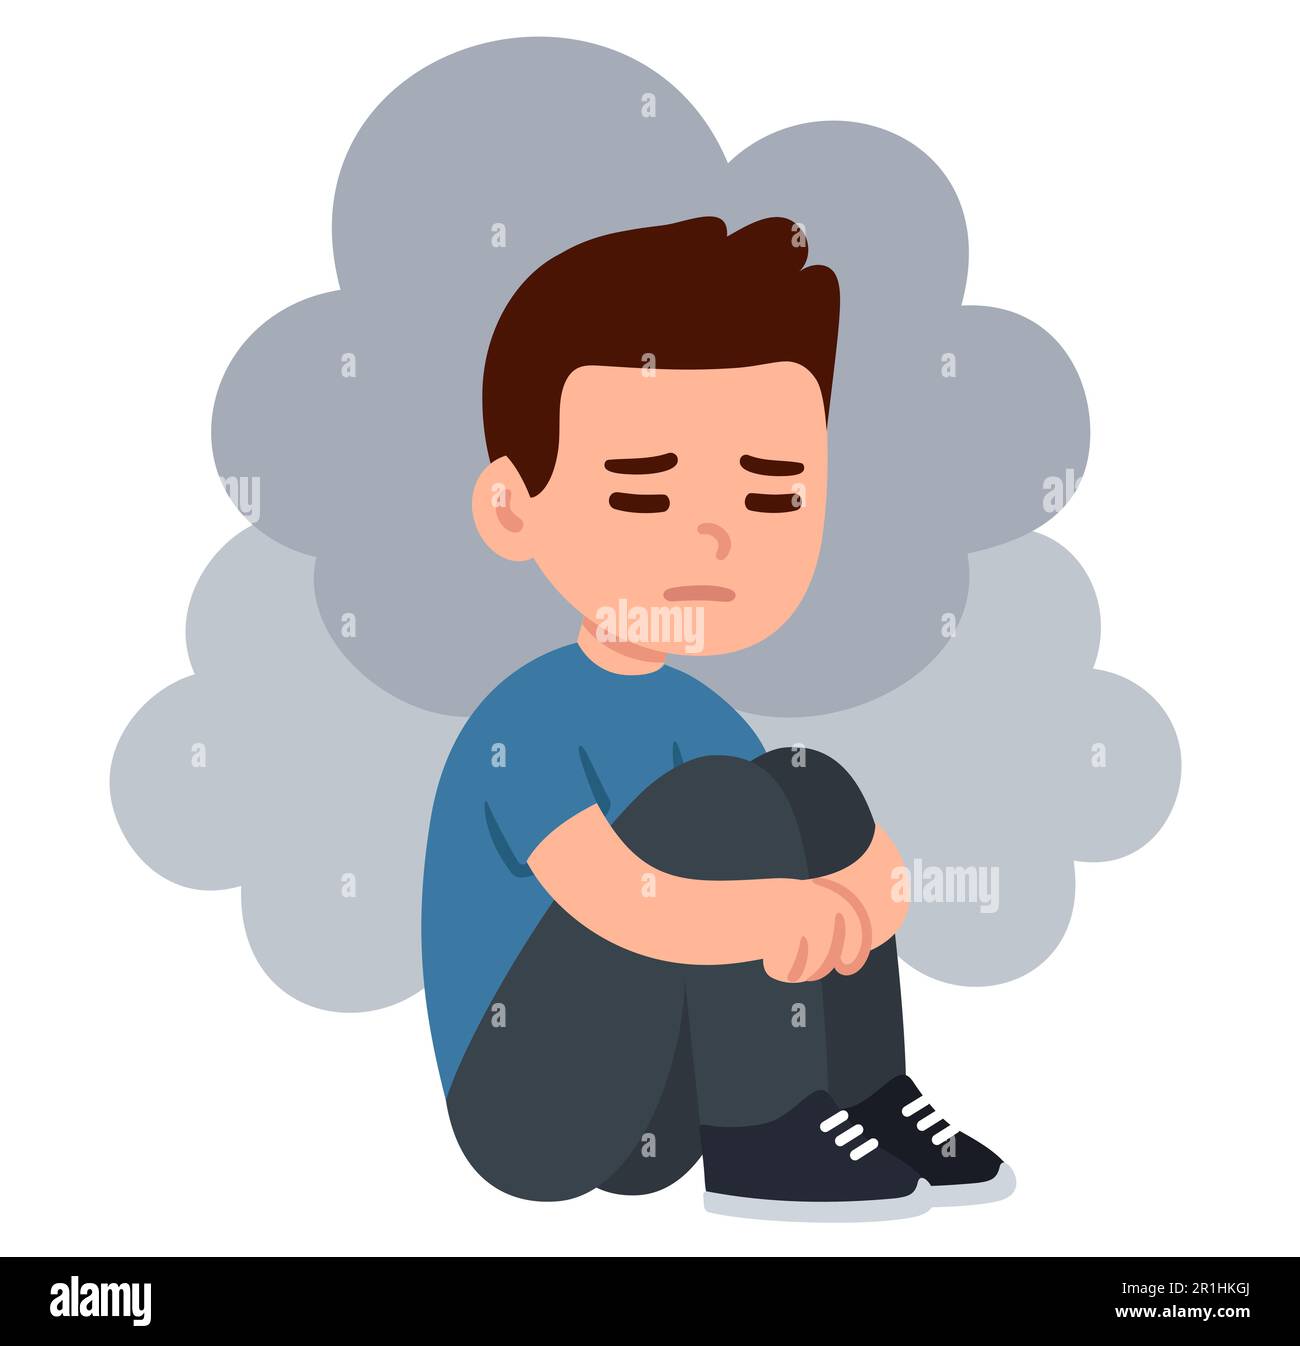 Triste adolescent déprimé assis sur le sol embrassant les genoux avec des nuages autour. Dessin de dessin animé simple et plat. Clip de vecteur de santé mentale et de dépression Illustration de Vecteur